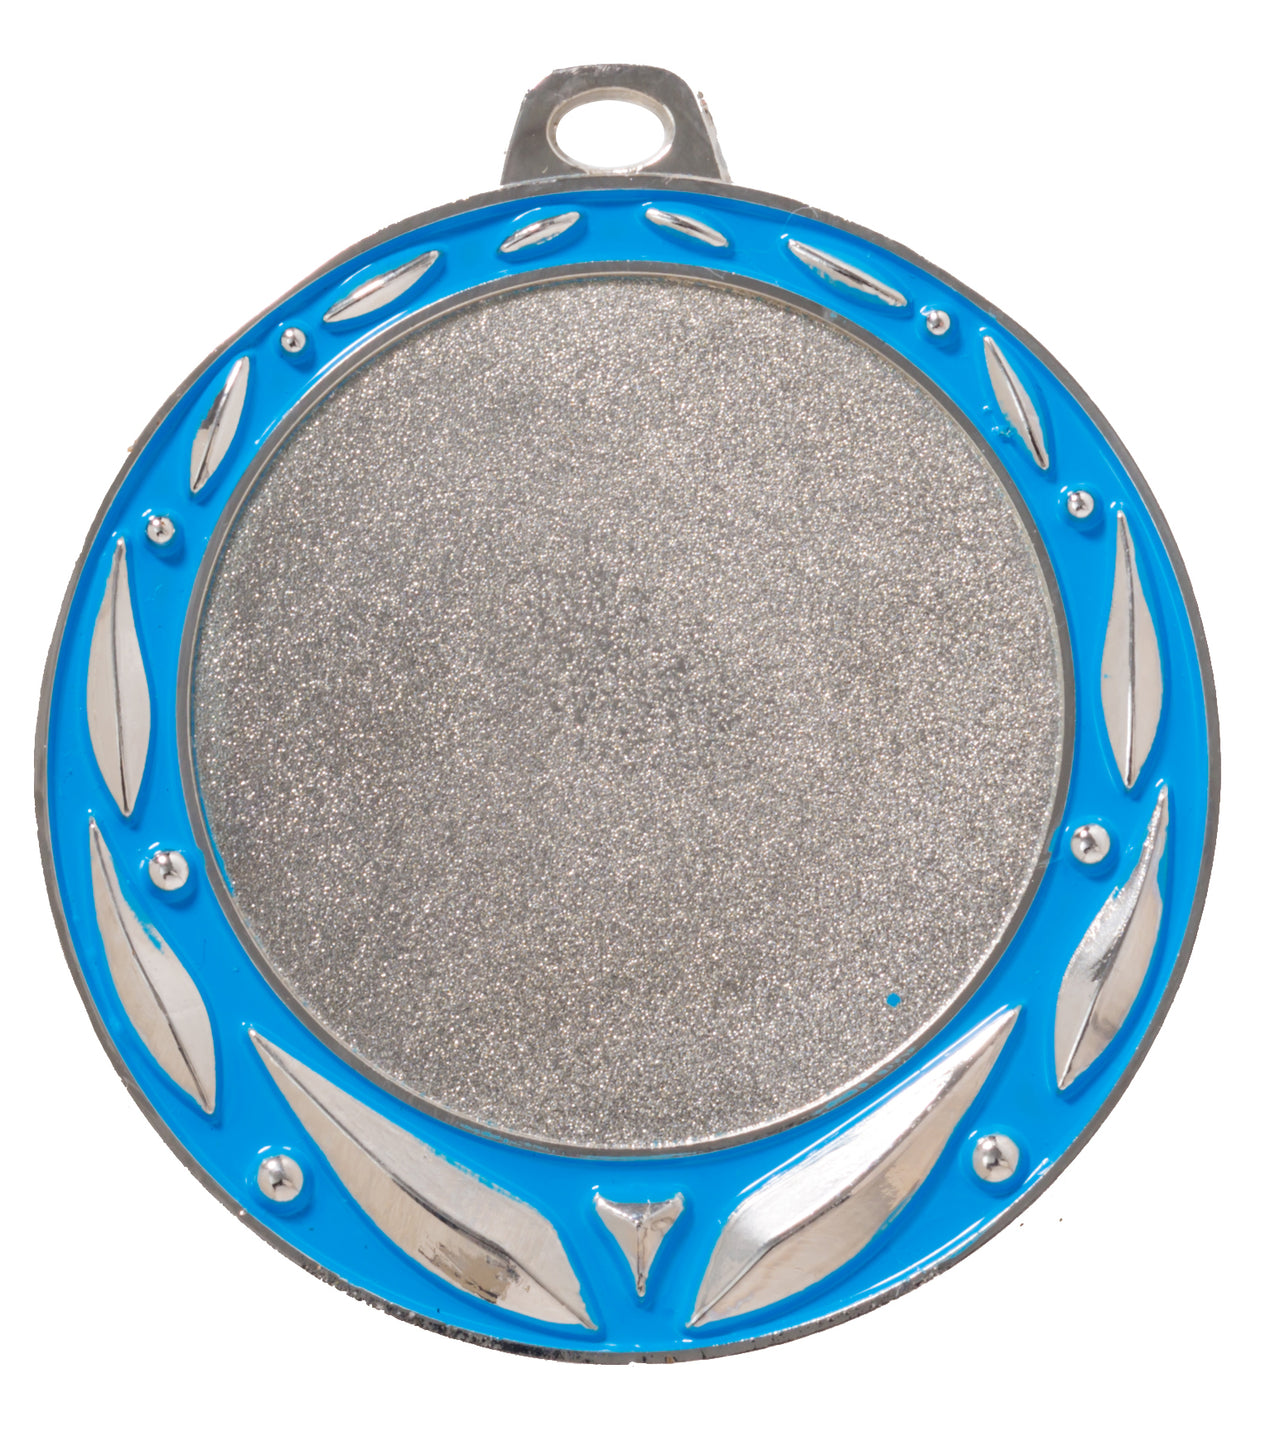 Eine runde Silbermedaille, Medaillen Münster 70 mm PK79232g-E50, verfügt über einen blauen Zierrand und eine kleine Schlaufe an der Oberseite zum Befestigen an einem Band und zeigt das exklusive Design von Pomeki.